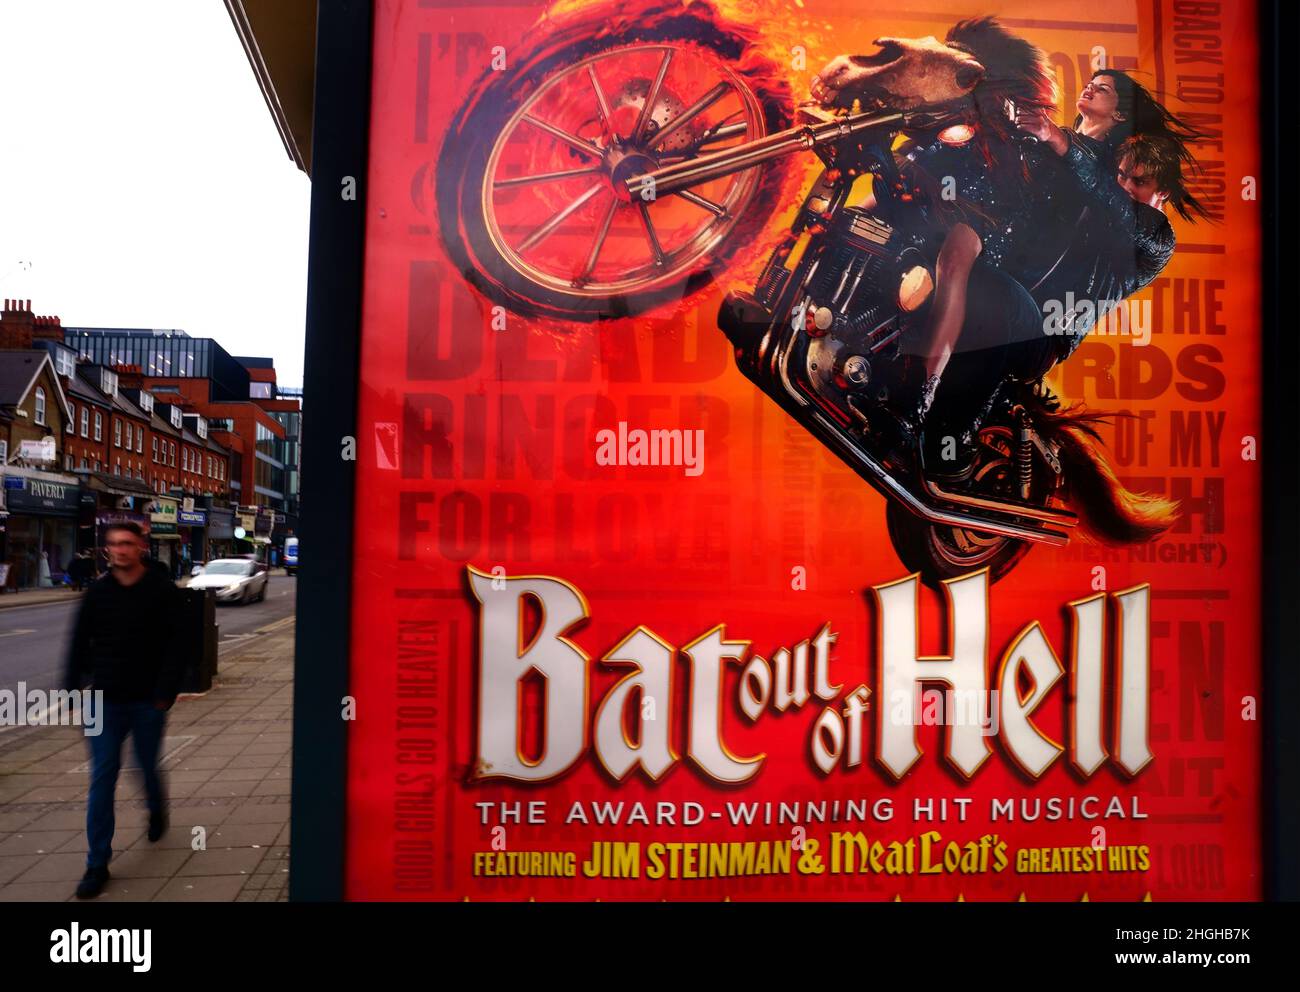 Ein Plakat für bat Out of Hell, das Musical im New Wimbledon Theatre im Südwesten Londons. DER US-Sänger Meat Loaf, zu dessen Hits auch bat Out of Hell gehörte, ist im Alter von 74 Jahren verstorben, hieß es in einer Erklärung auf seiner offiziellen Facebook-Seite. Bilddatum: Freitag, 21. Januar 2022. Stockfoto